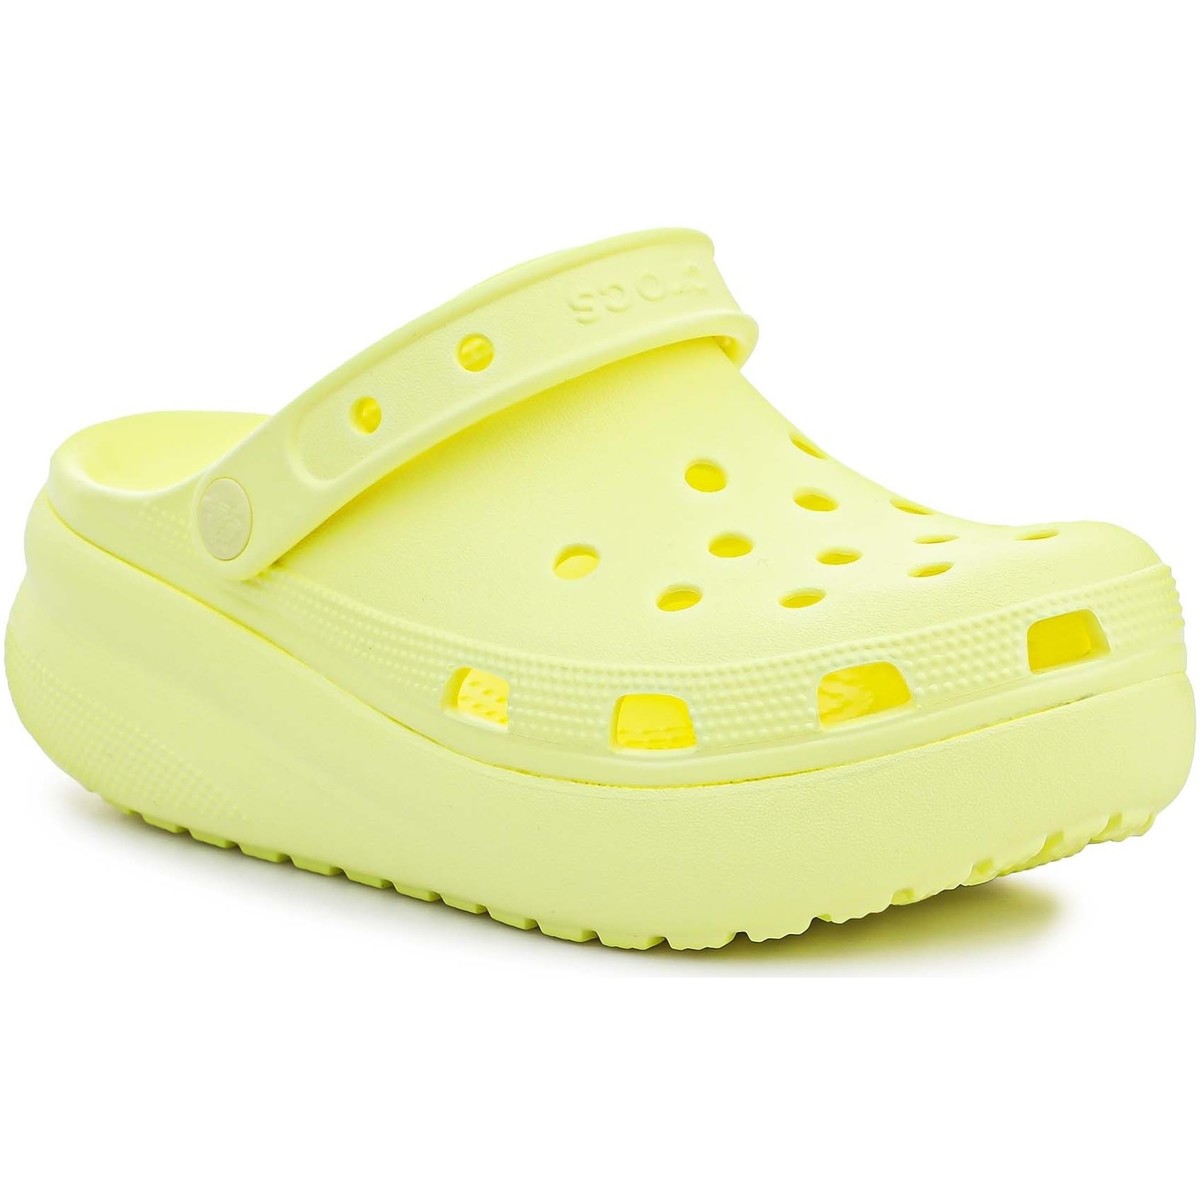 Τσόκαρα Crocs Classic Cutie Clog Kids 207708-75U